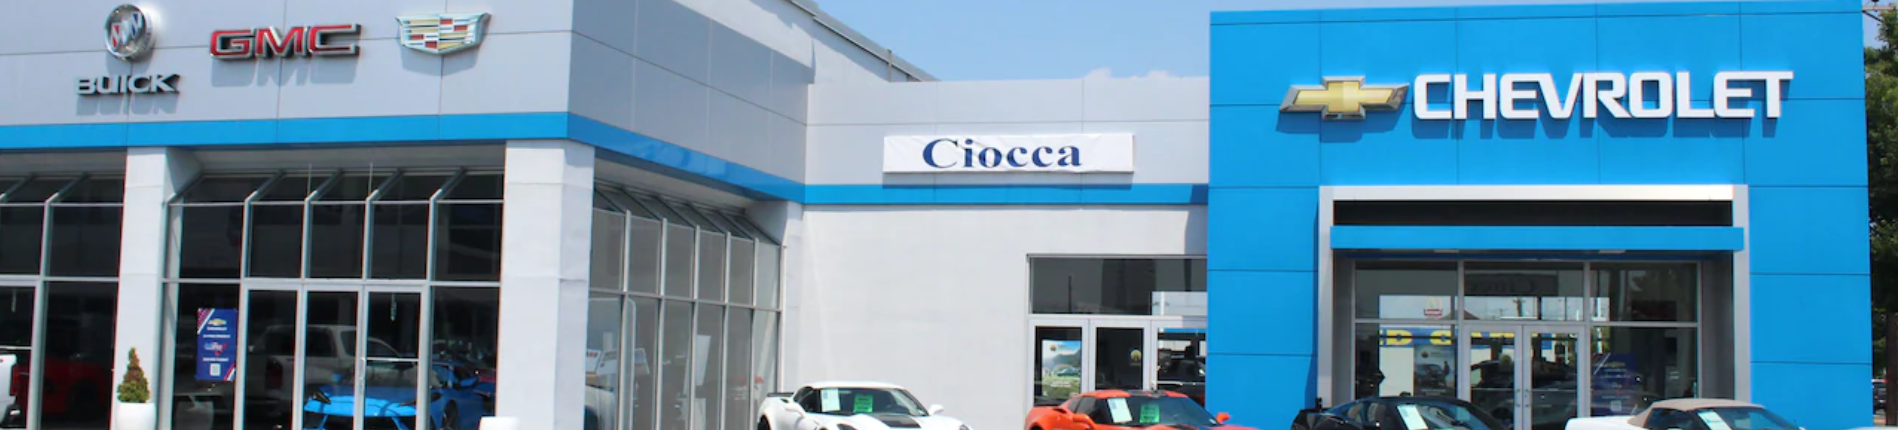 Ciocca Chevrolet Buick GMC of Atlantic City Cars for Sale Cars com